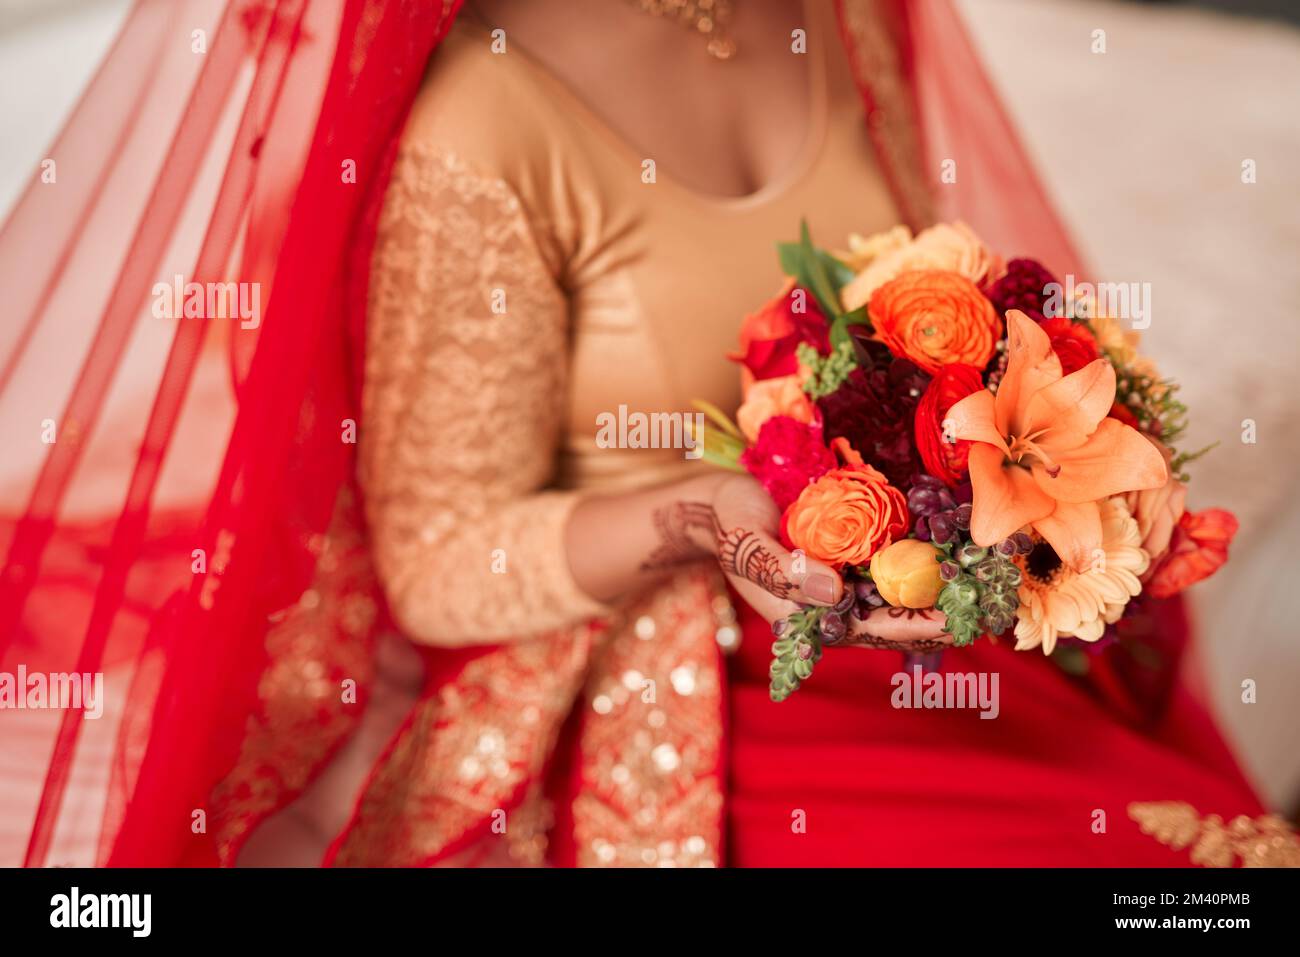 Hochzeiten sind eine farbenfrohe Angelegenheit. Eine unbekannte Frau, die vor ihrer Hochzeit Blumen in der Hand hatte. Stockfoto